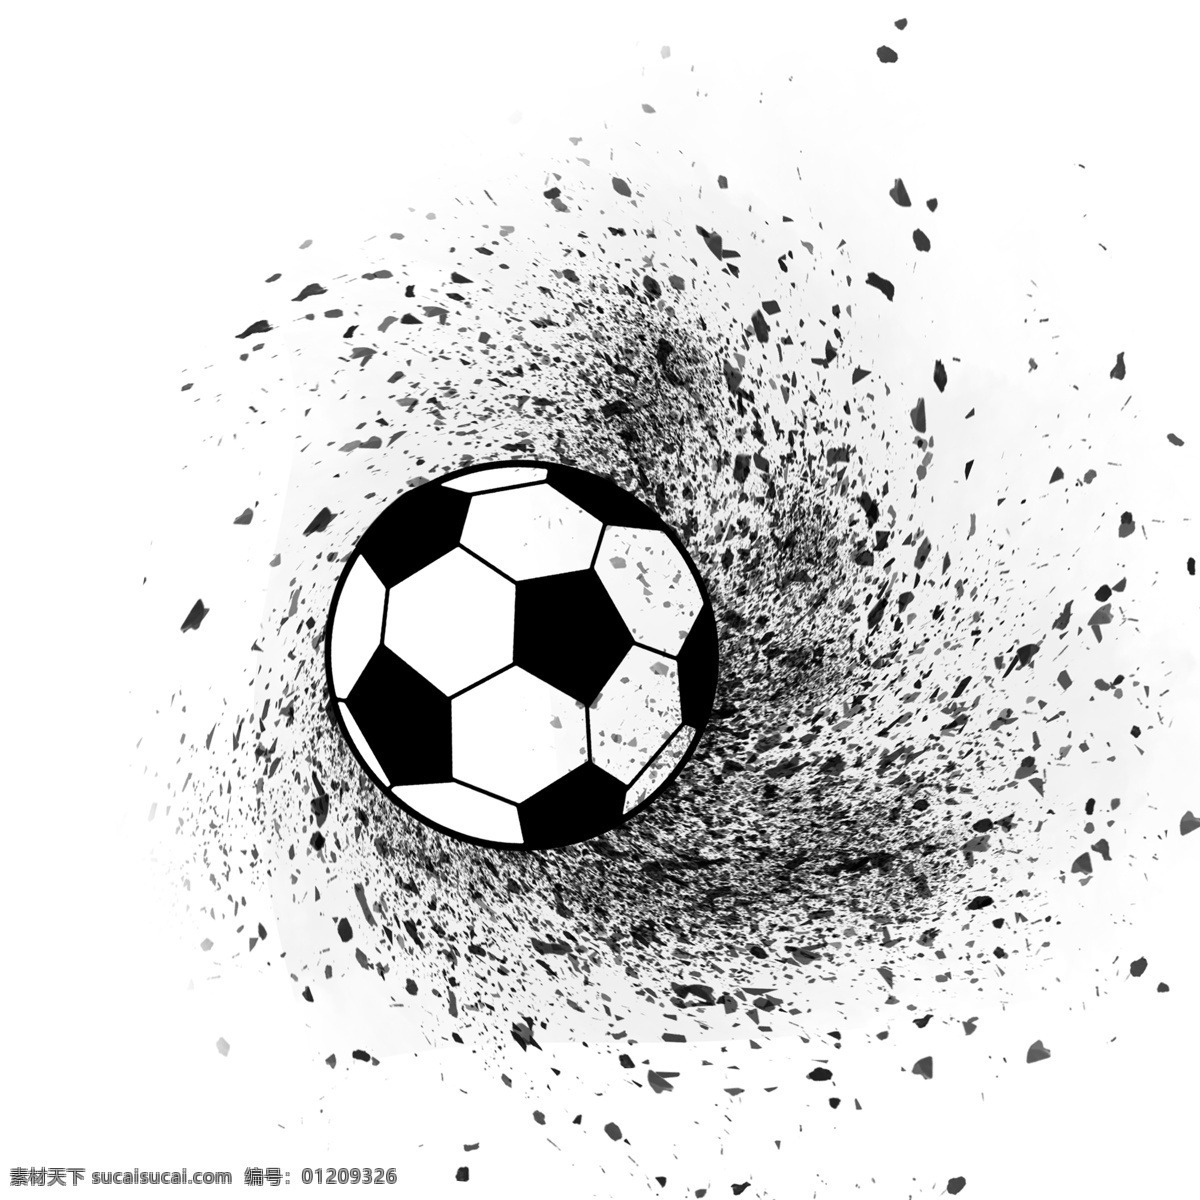 世界杯 足球 黑色 喷溅 黑白色 体育运动 体育比赛 足球比赛 炫彩的世界杯 炫彩足球 炫酷世界杯 世界杯设计 大气